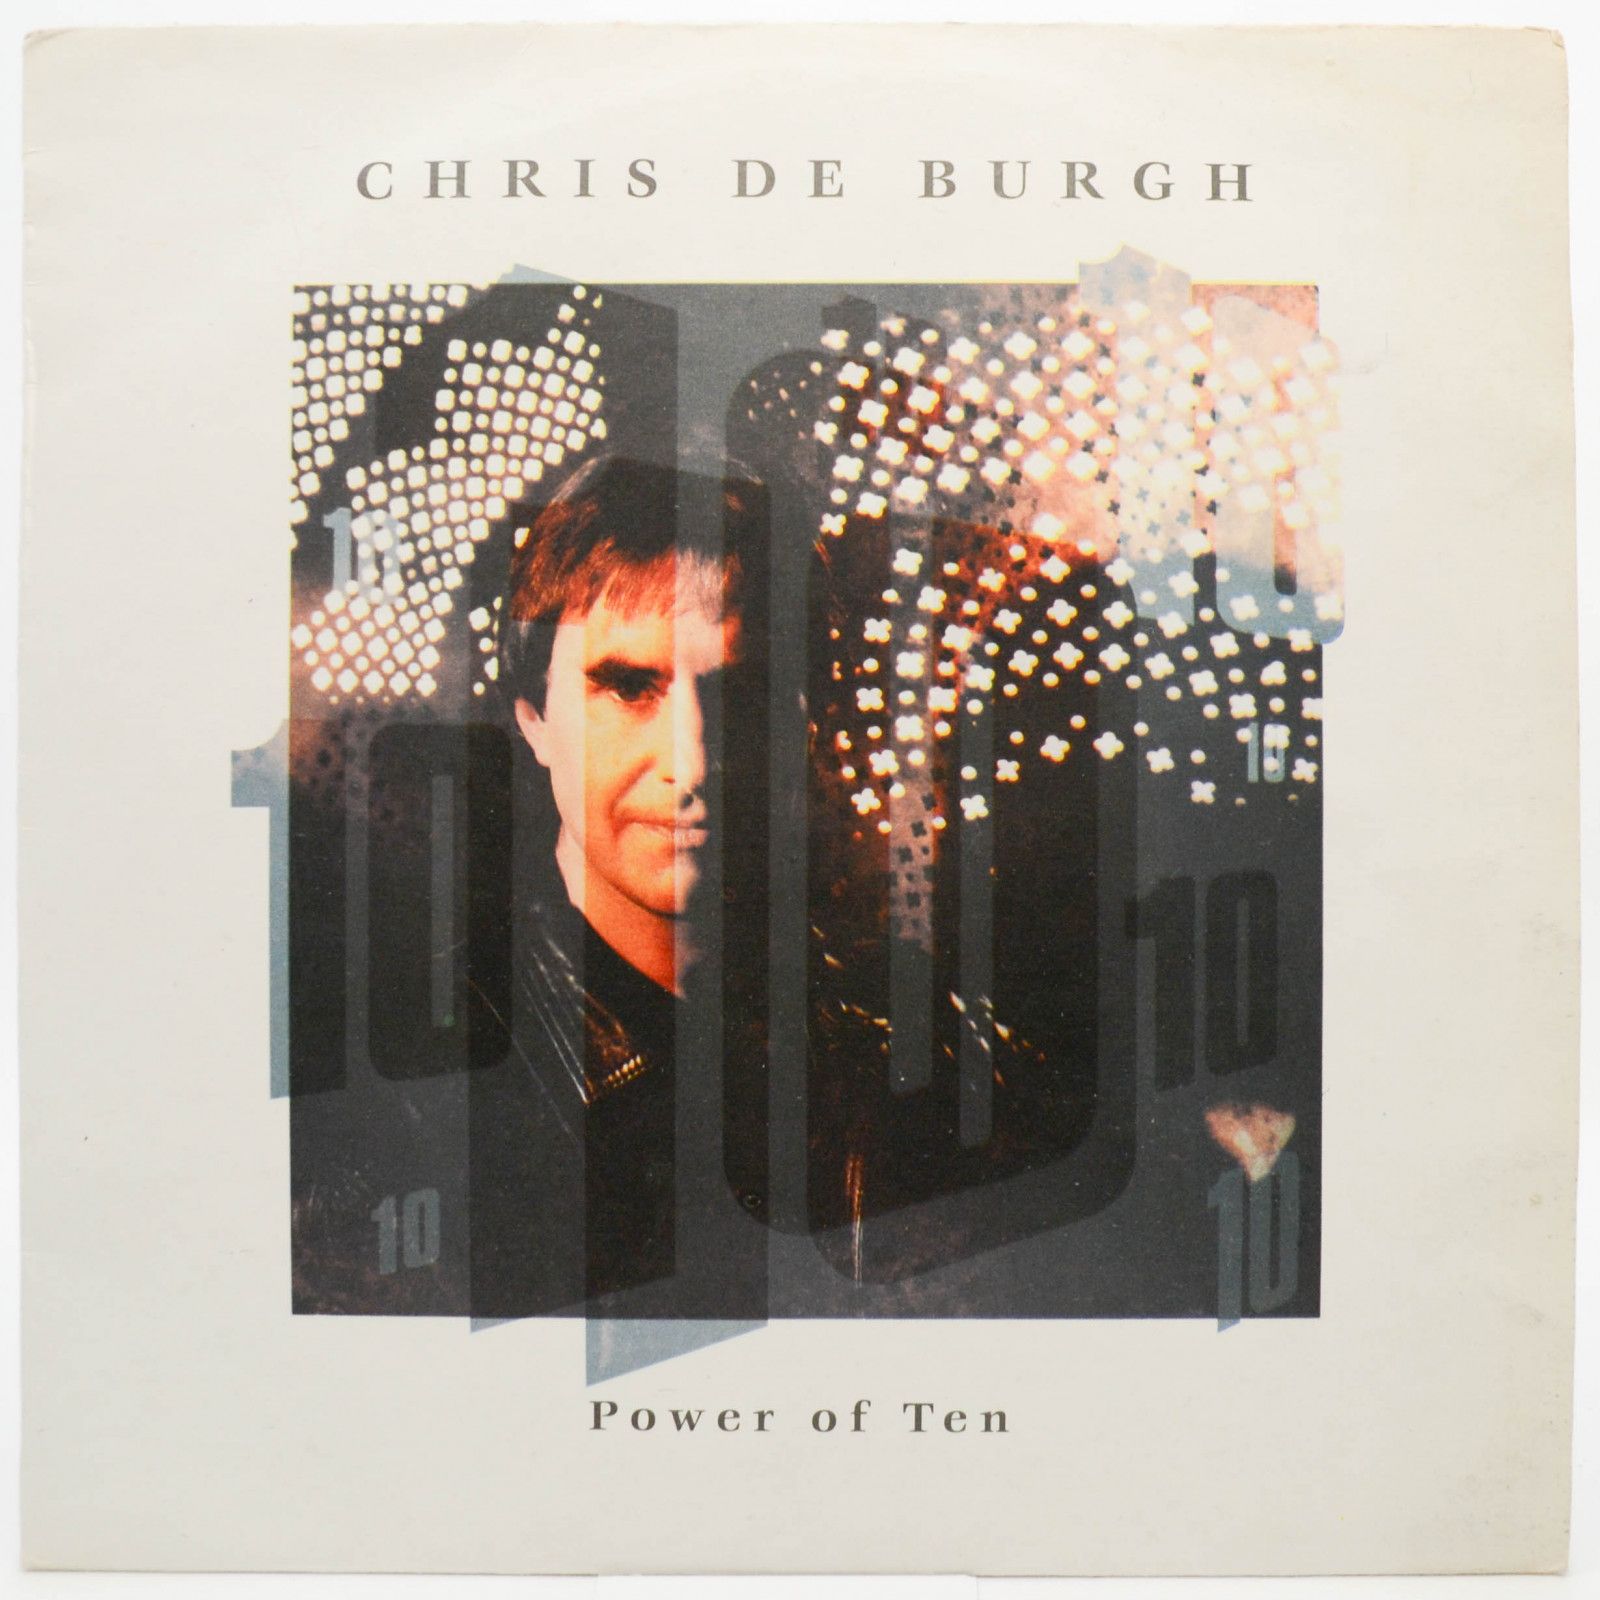 Chris de Burgh — Power Of Ten, 1992